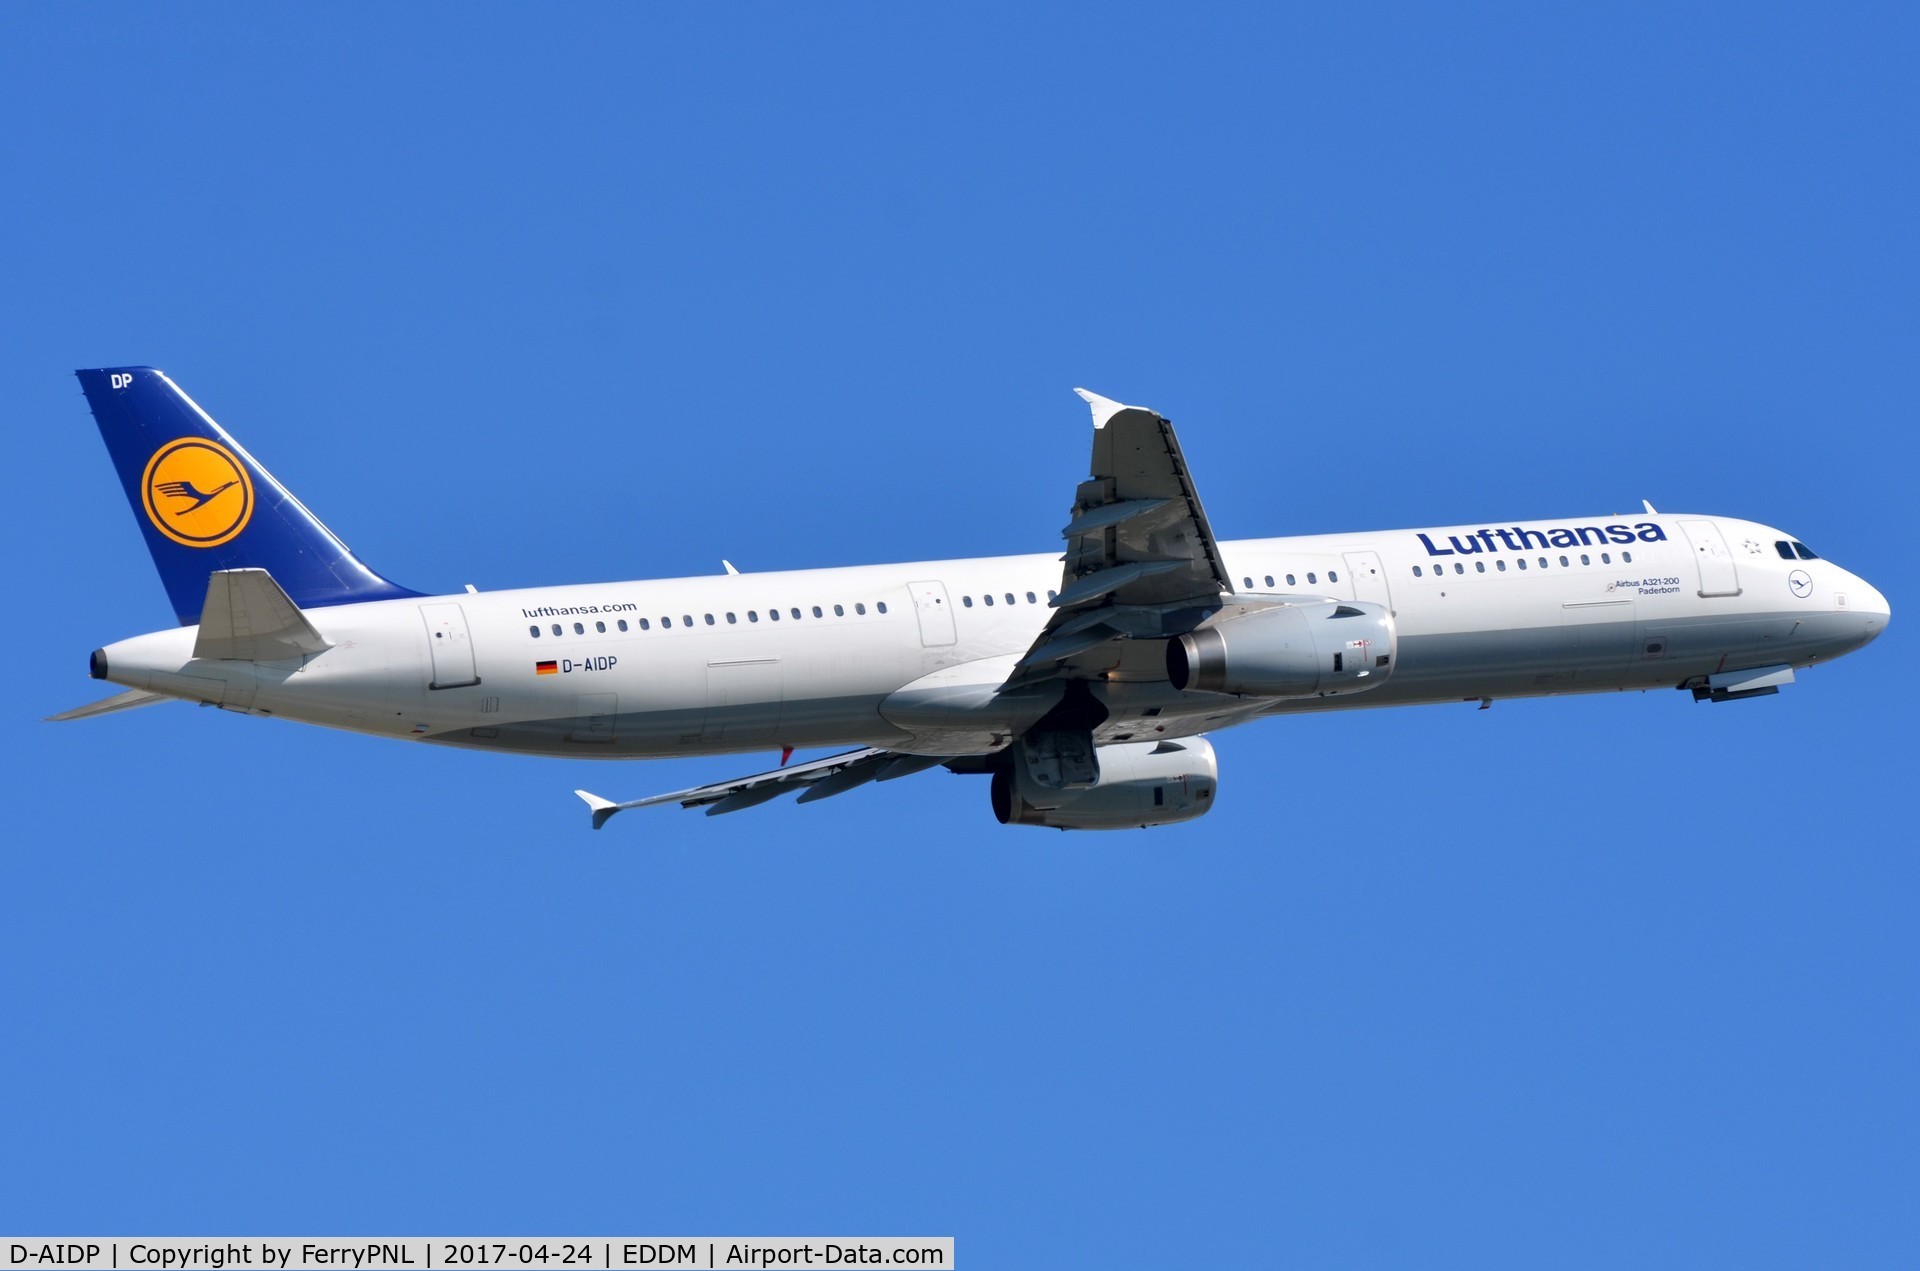 D-AIDP, 2012 Airbus A321-231 C/N 5049, Lufthansa A321